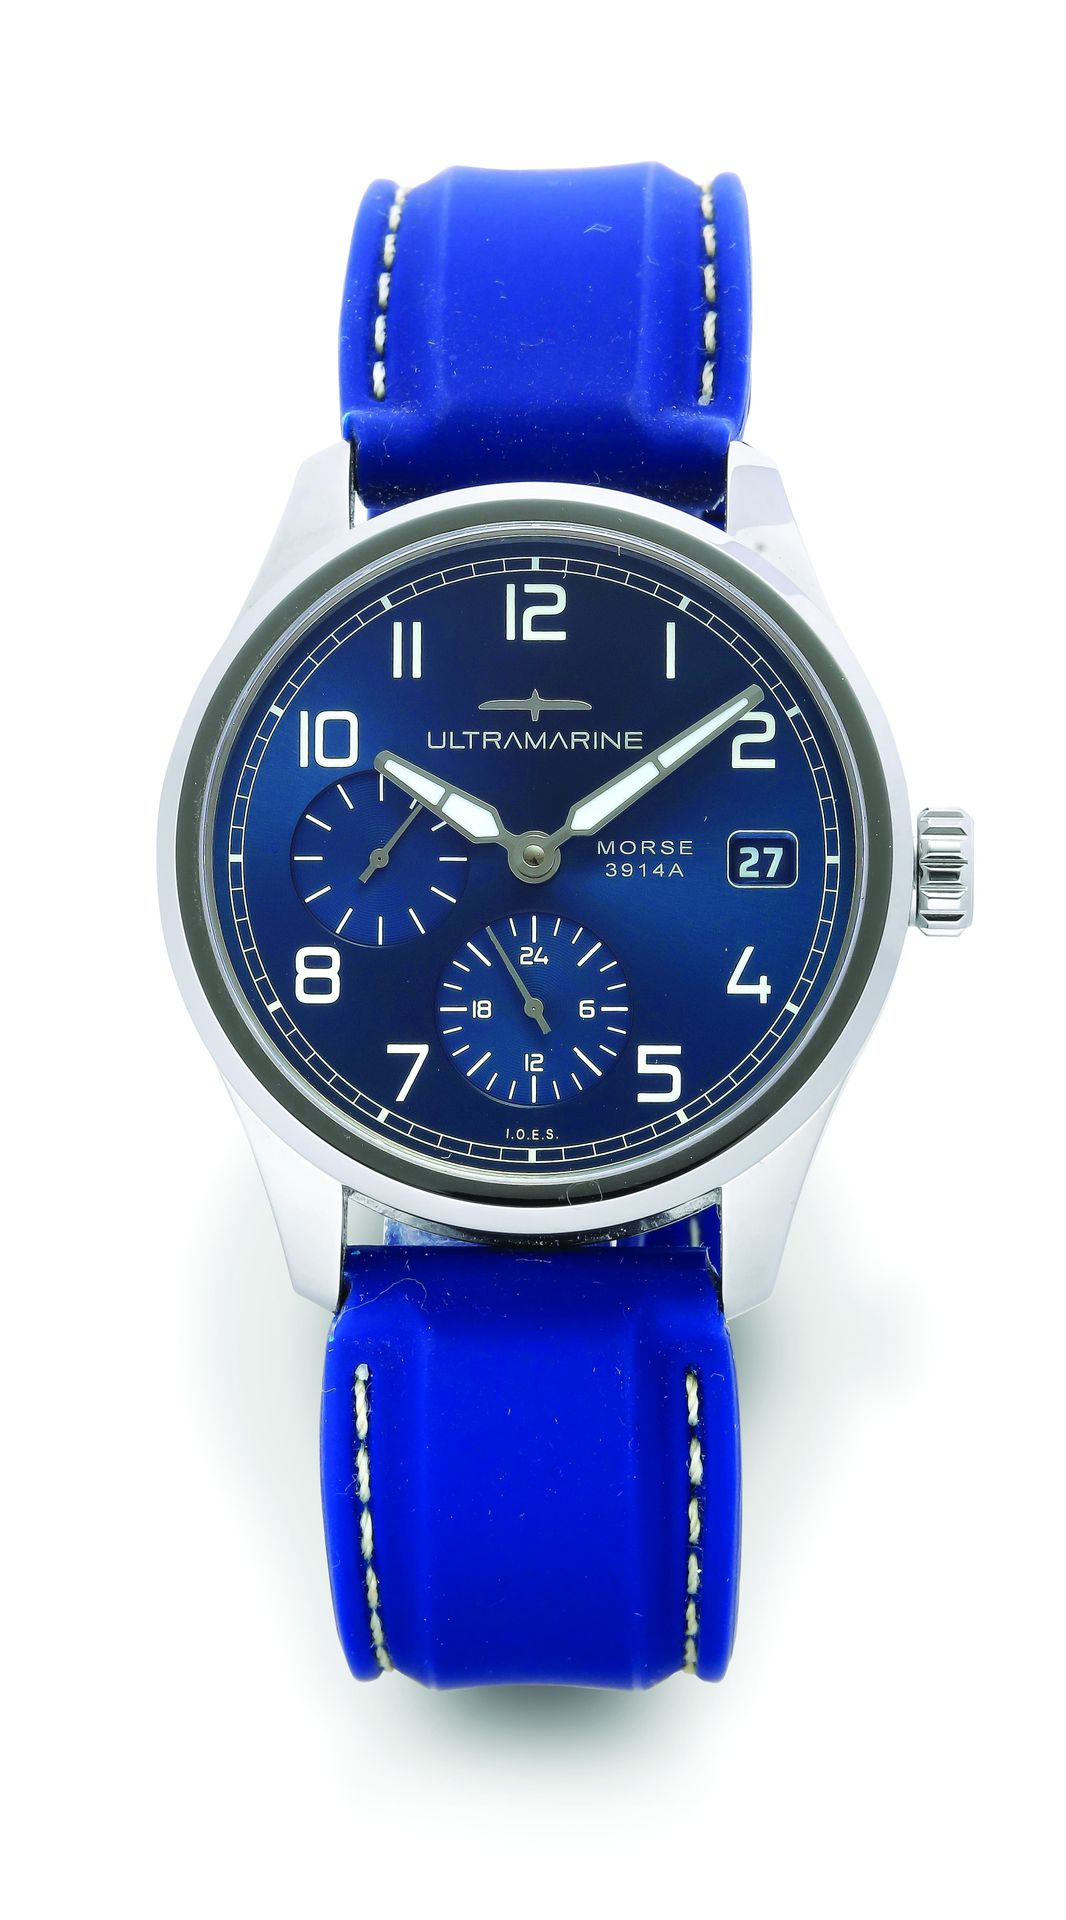 Ultramarine Morse 3914A - 3/300
Reloj deportivo de acero con movimiento automáti&hellip;